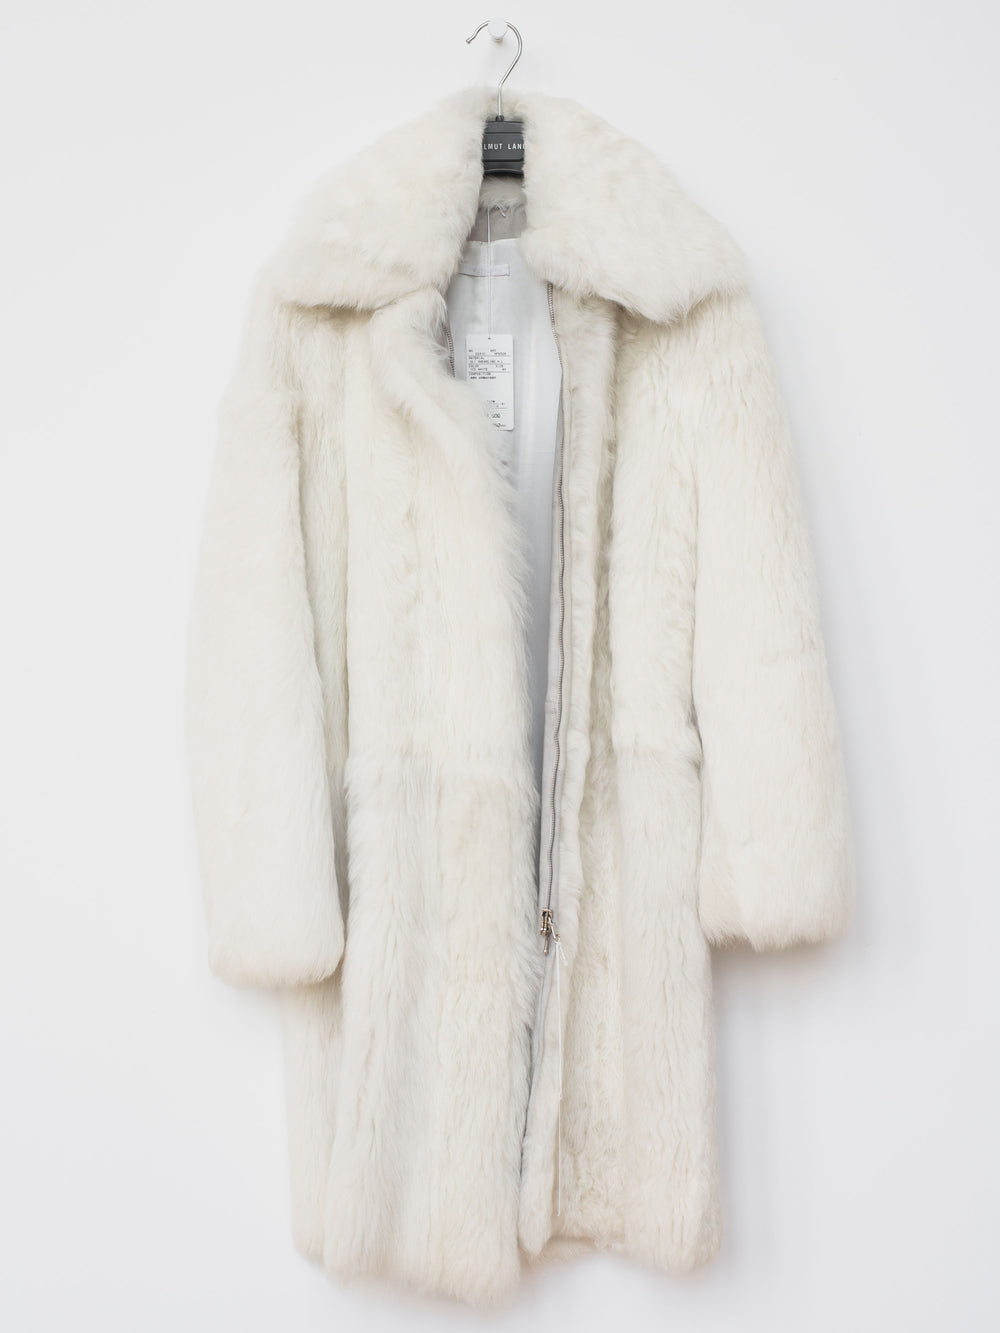 Helmut Lang AW00 Shearling Fur Coat